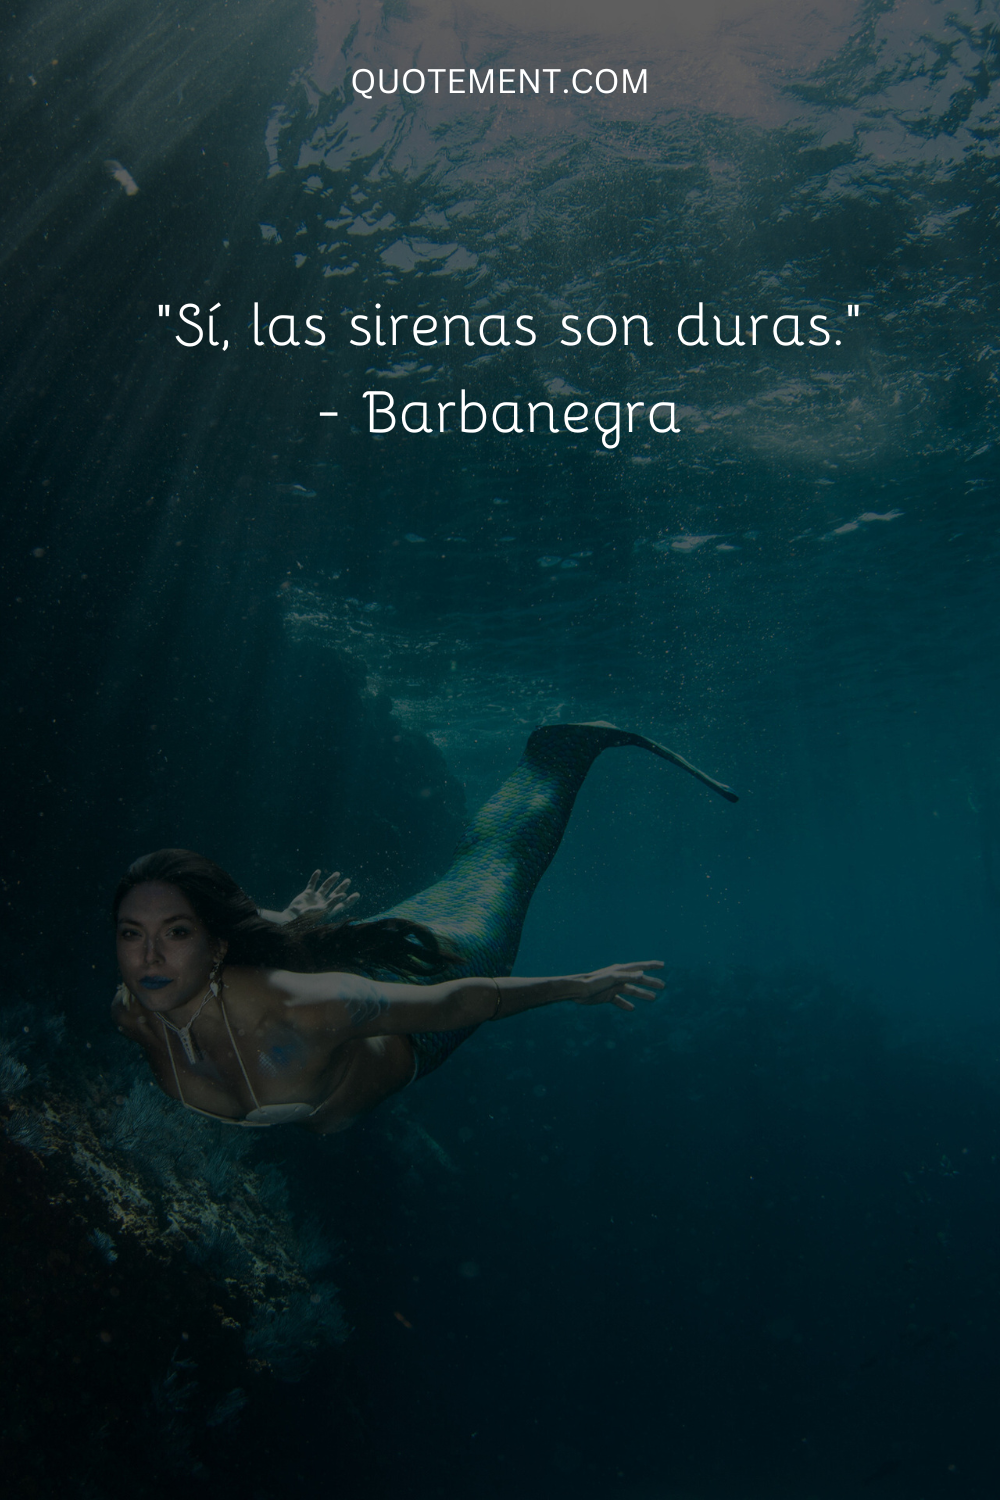 "Sí, las sirenas son duras". - Barbanegra